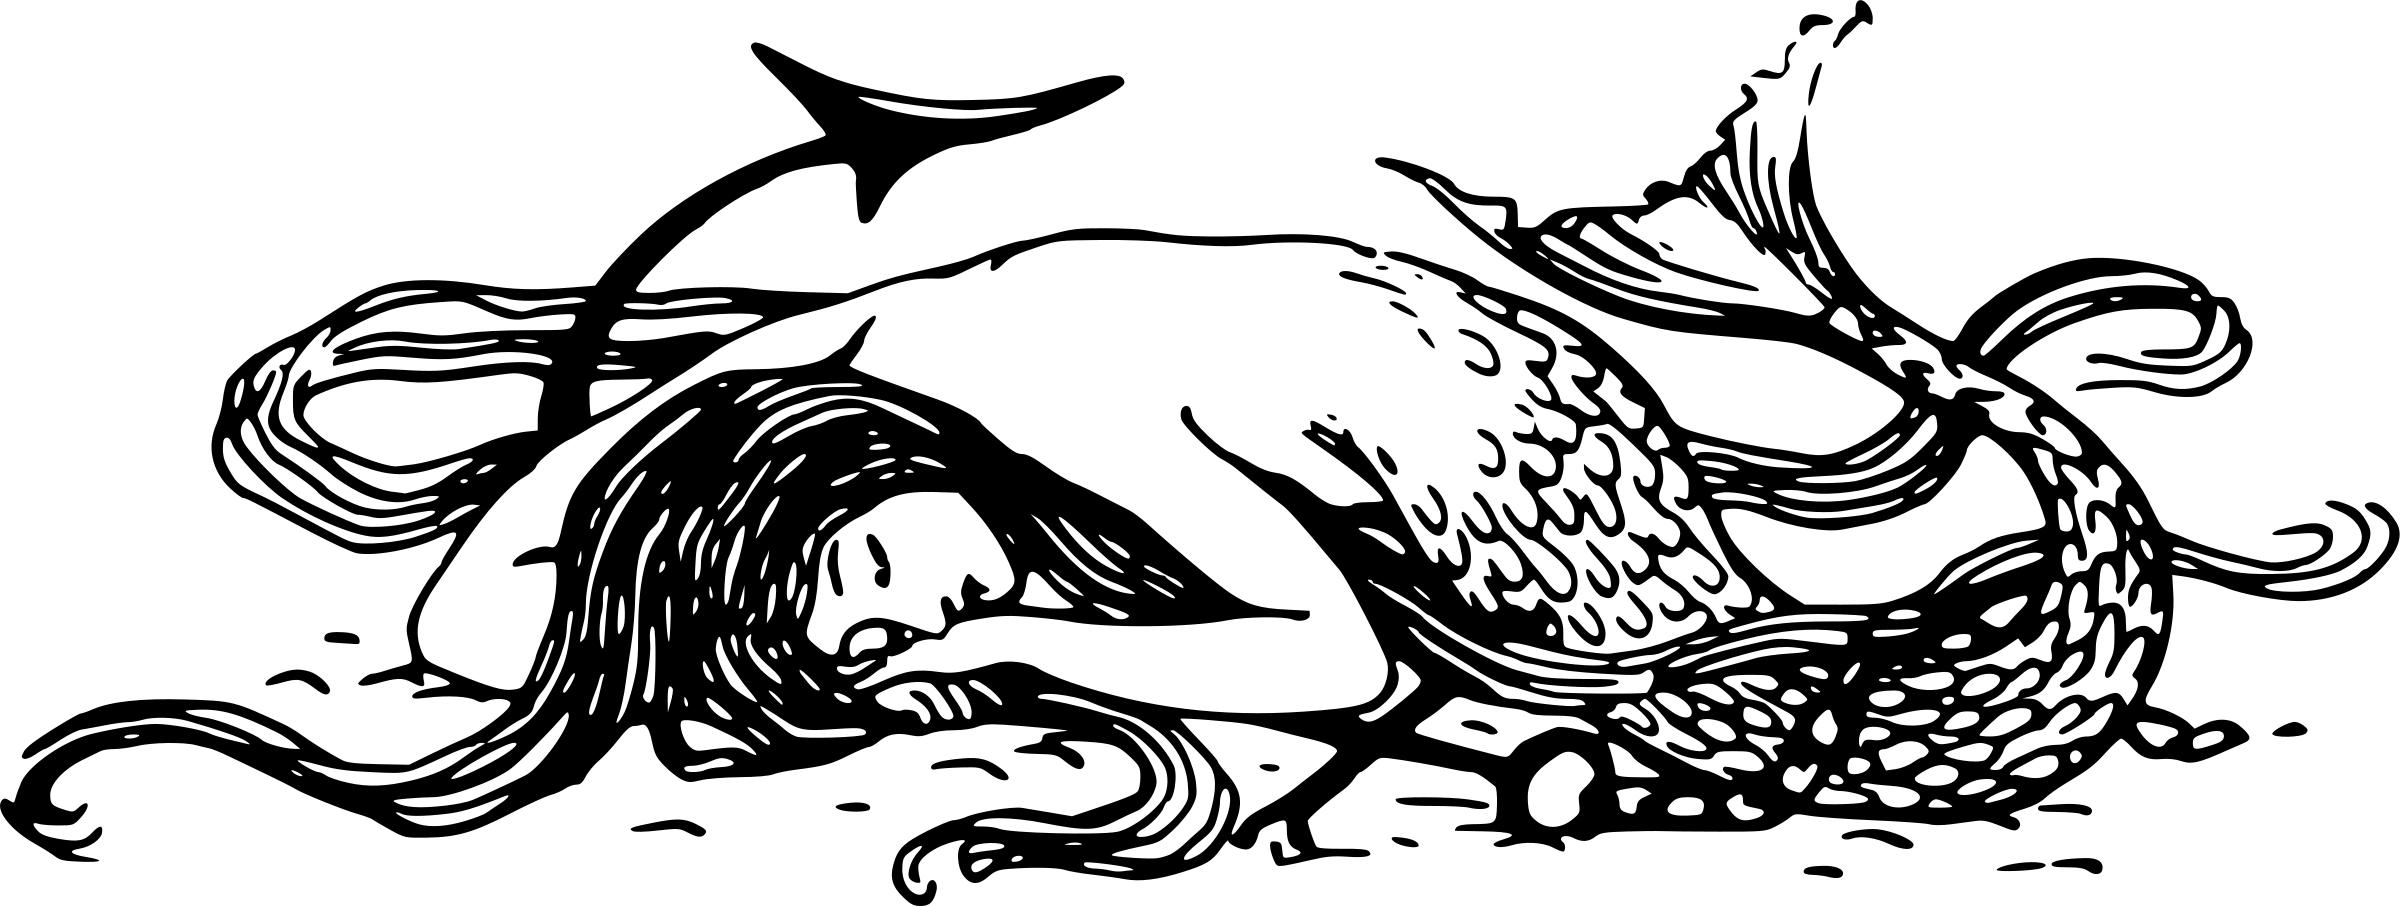 Sleeping mermaid PNG icons